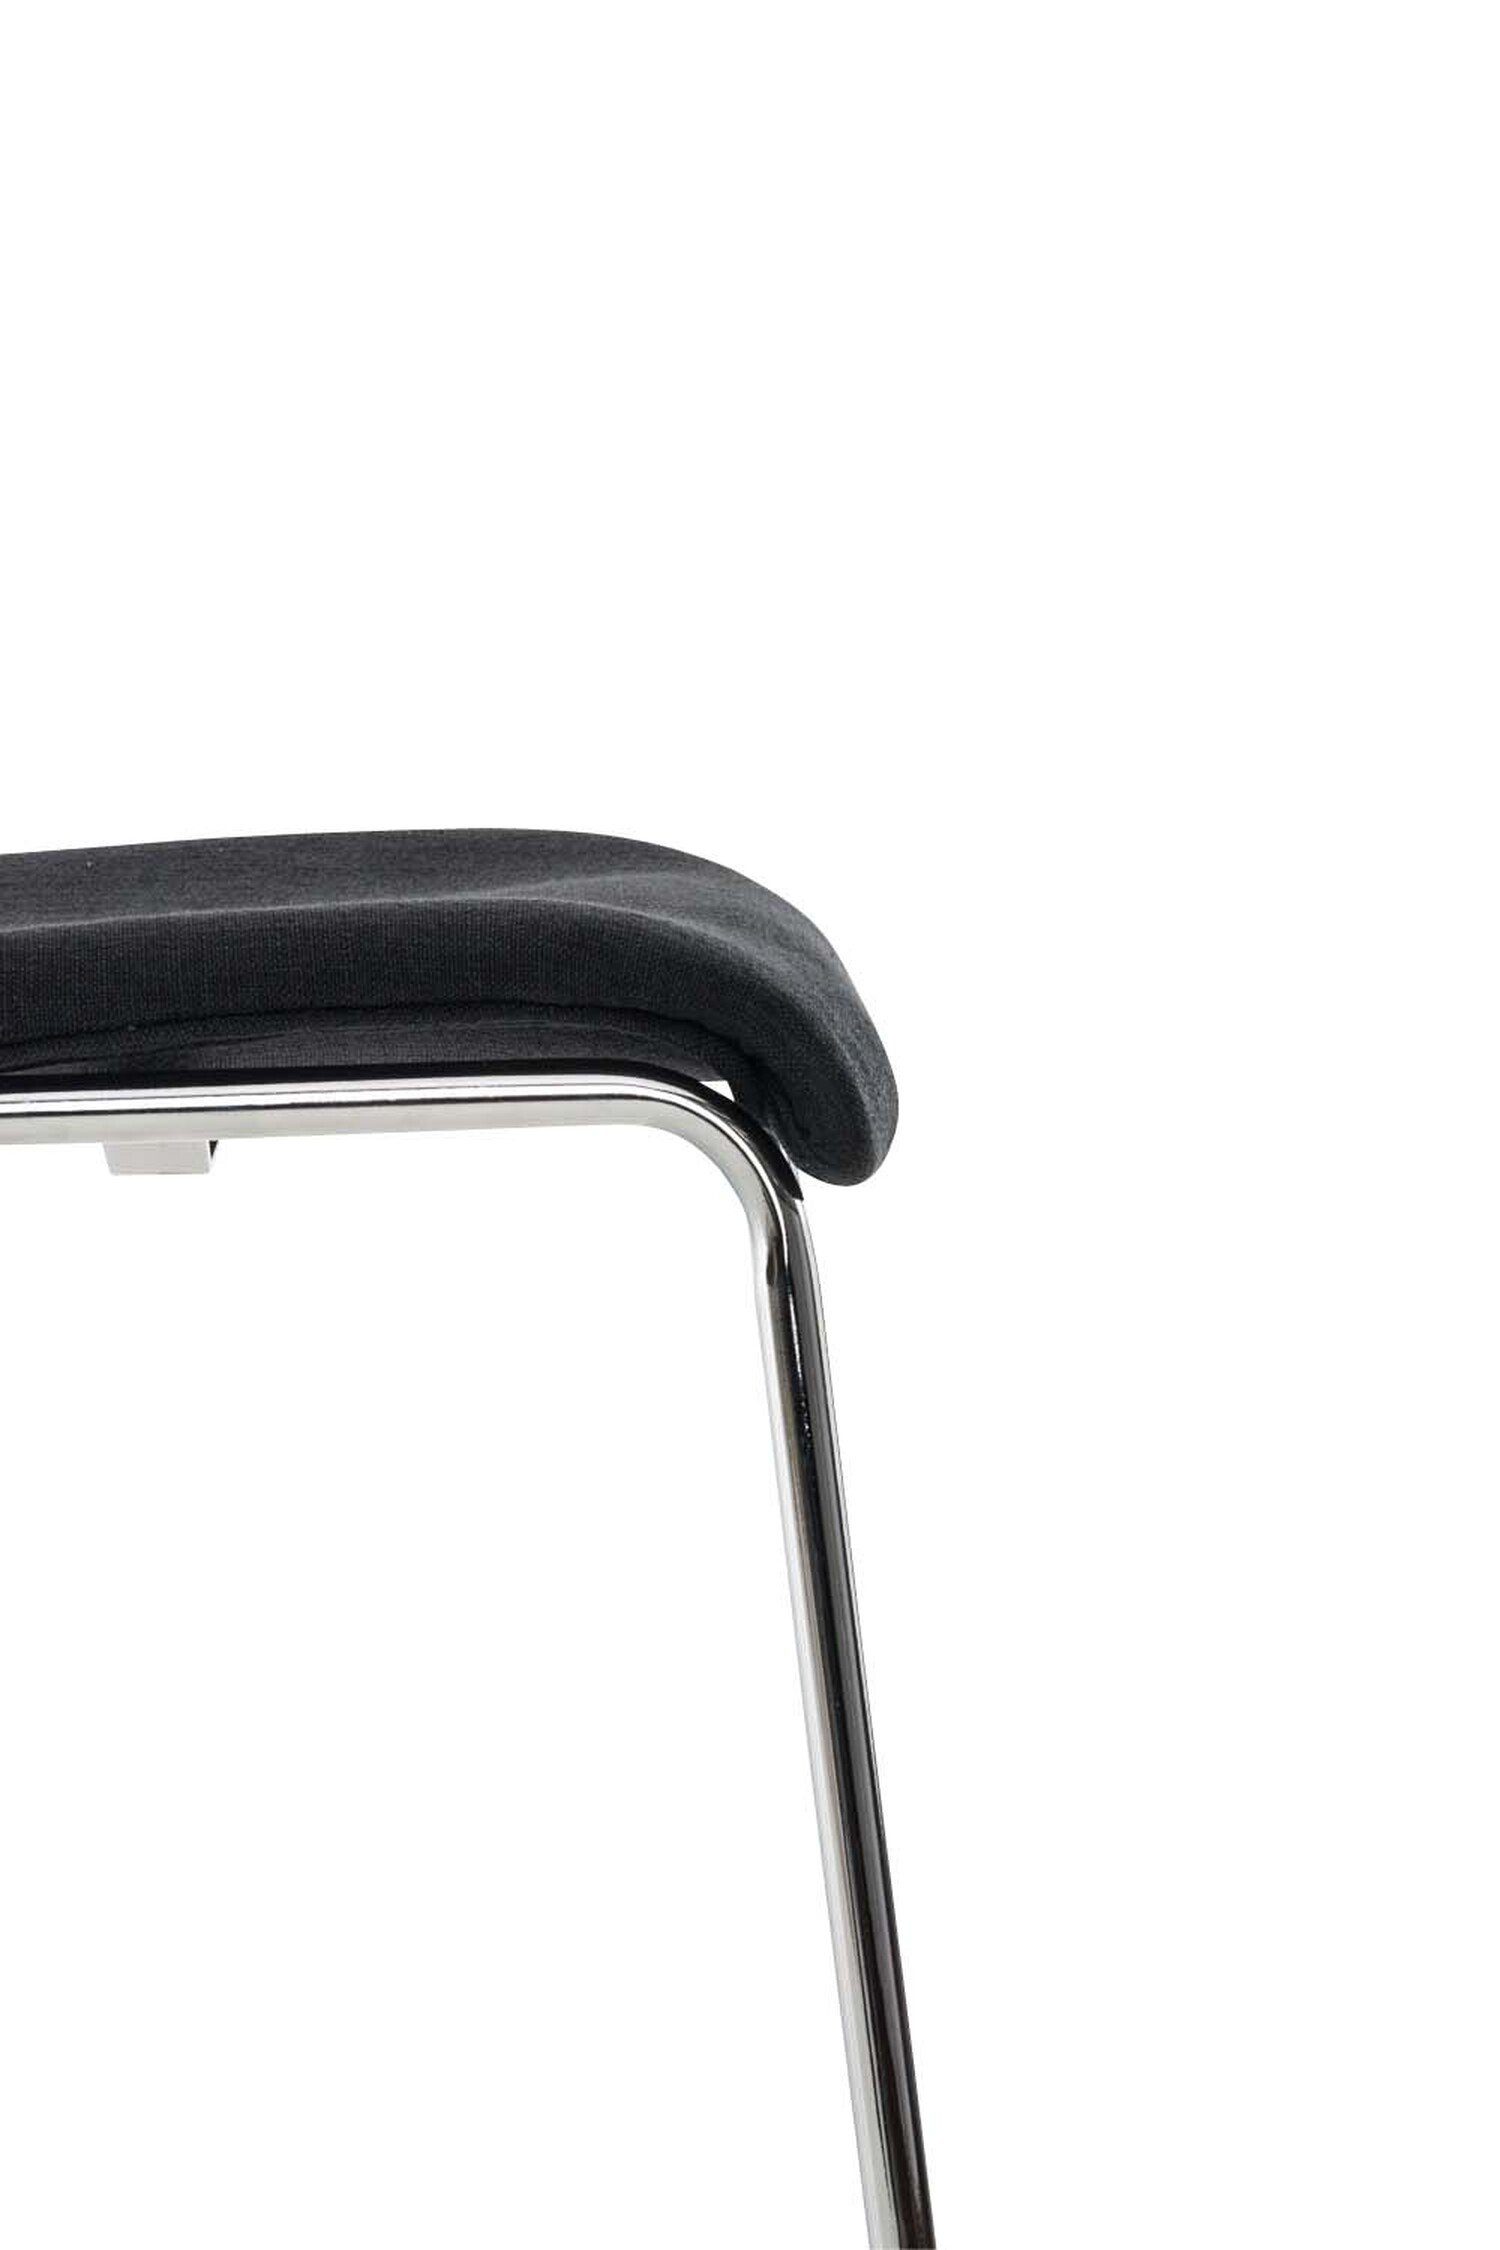 Barhocker Küche Fußstütze TPFLiving Stoff Sitzfläche: Schwarz - Theke - Gestell Tresenhocker), - Chrom & für Metall (mit Hoover Hocker